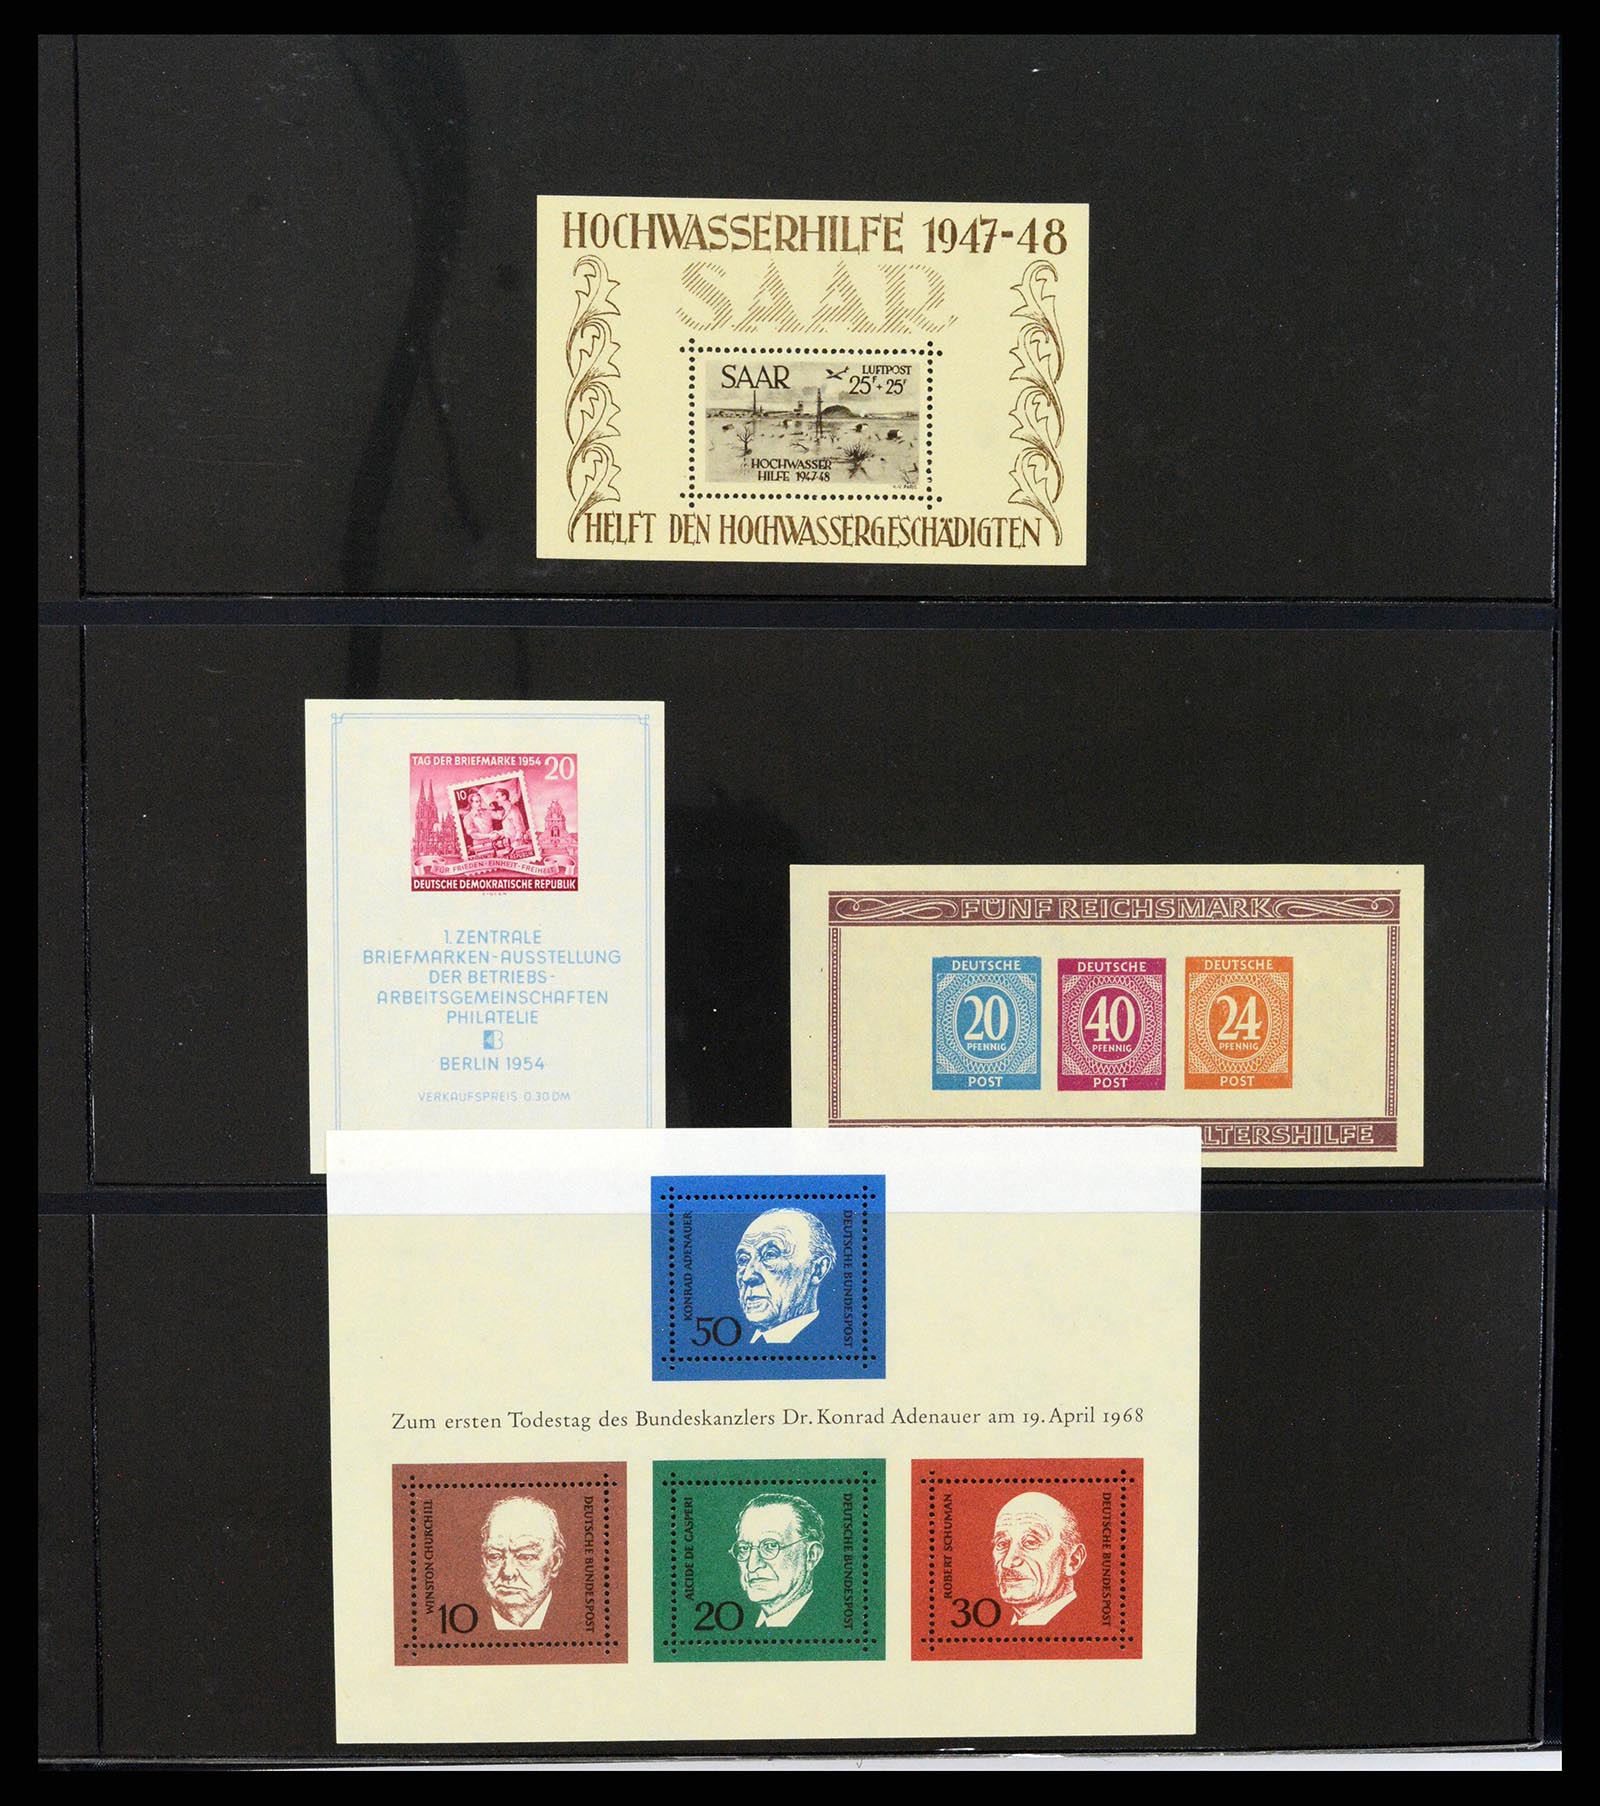 37345 032 - Stamp collection 37345 European countries souvenir sheets.